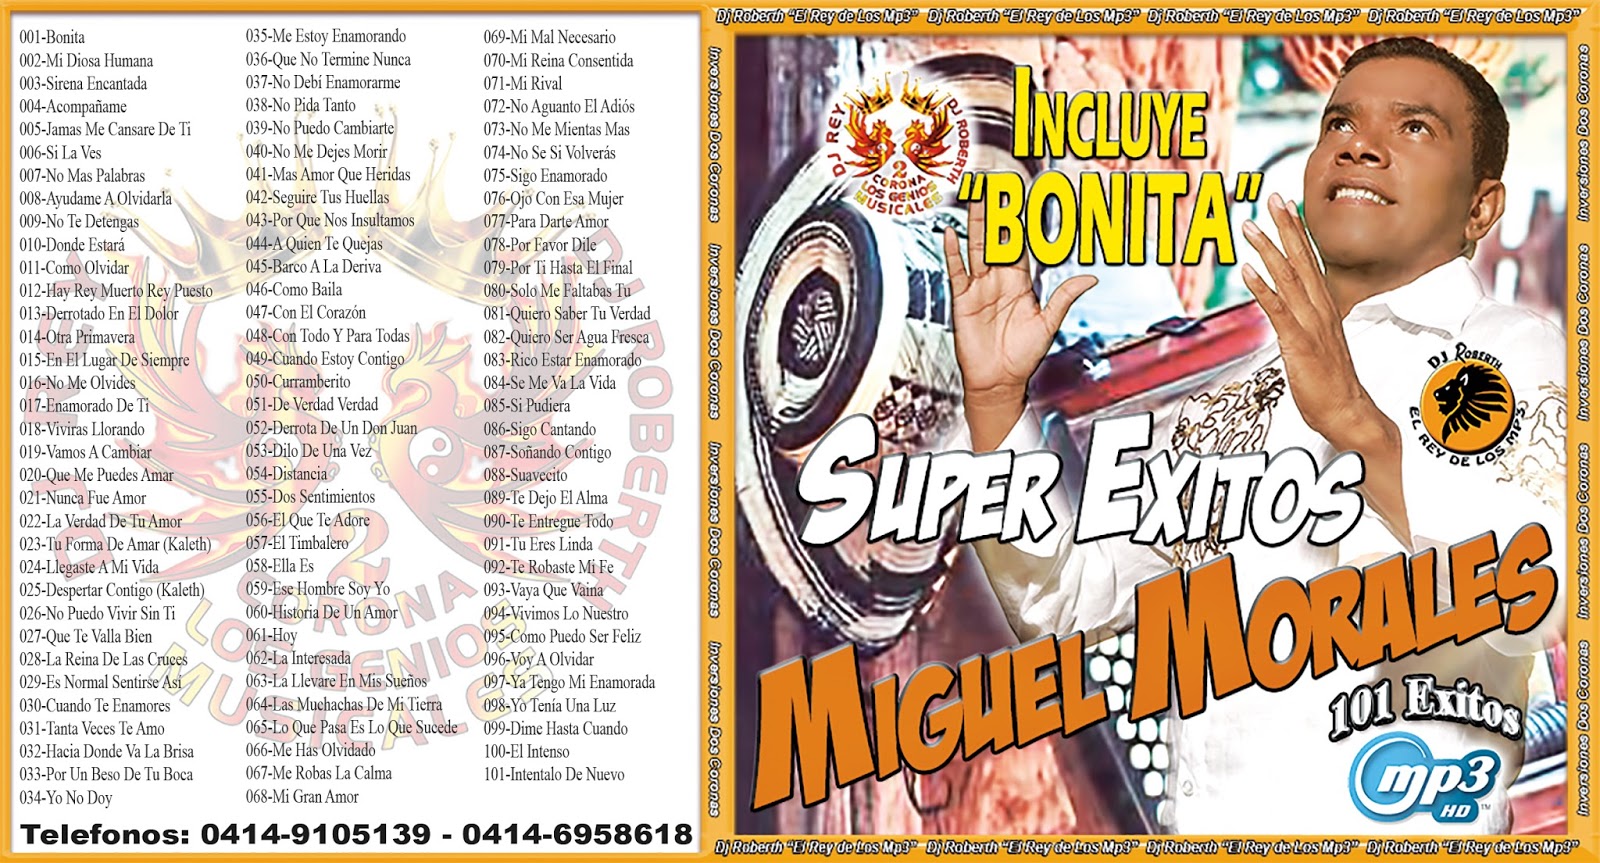 Miguel Morales Super Exitos - DjRoberth El Rey De Los Mp3 